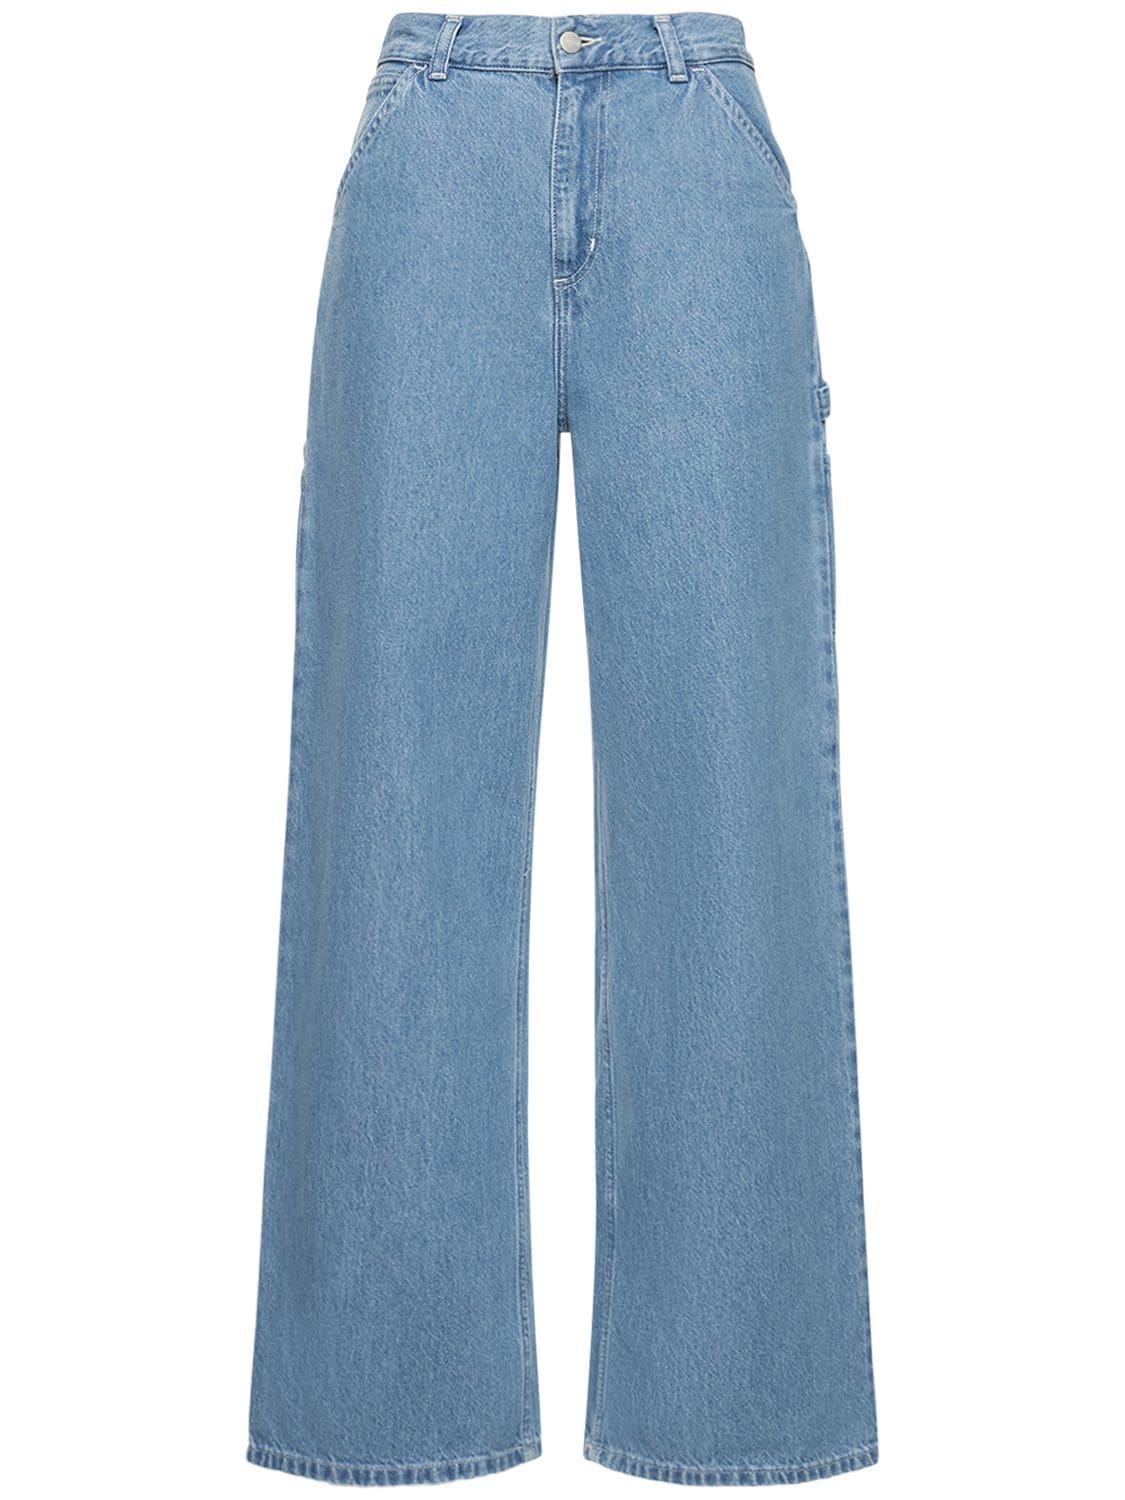 Jeans Aus Baumwolldenim Mit Weitem Bein - CARHARTT WIP - Modalova